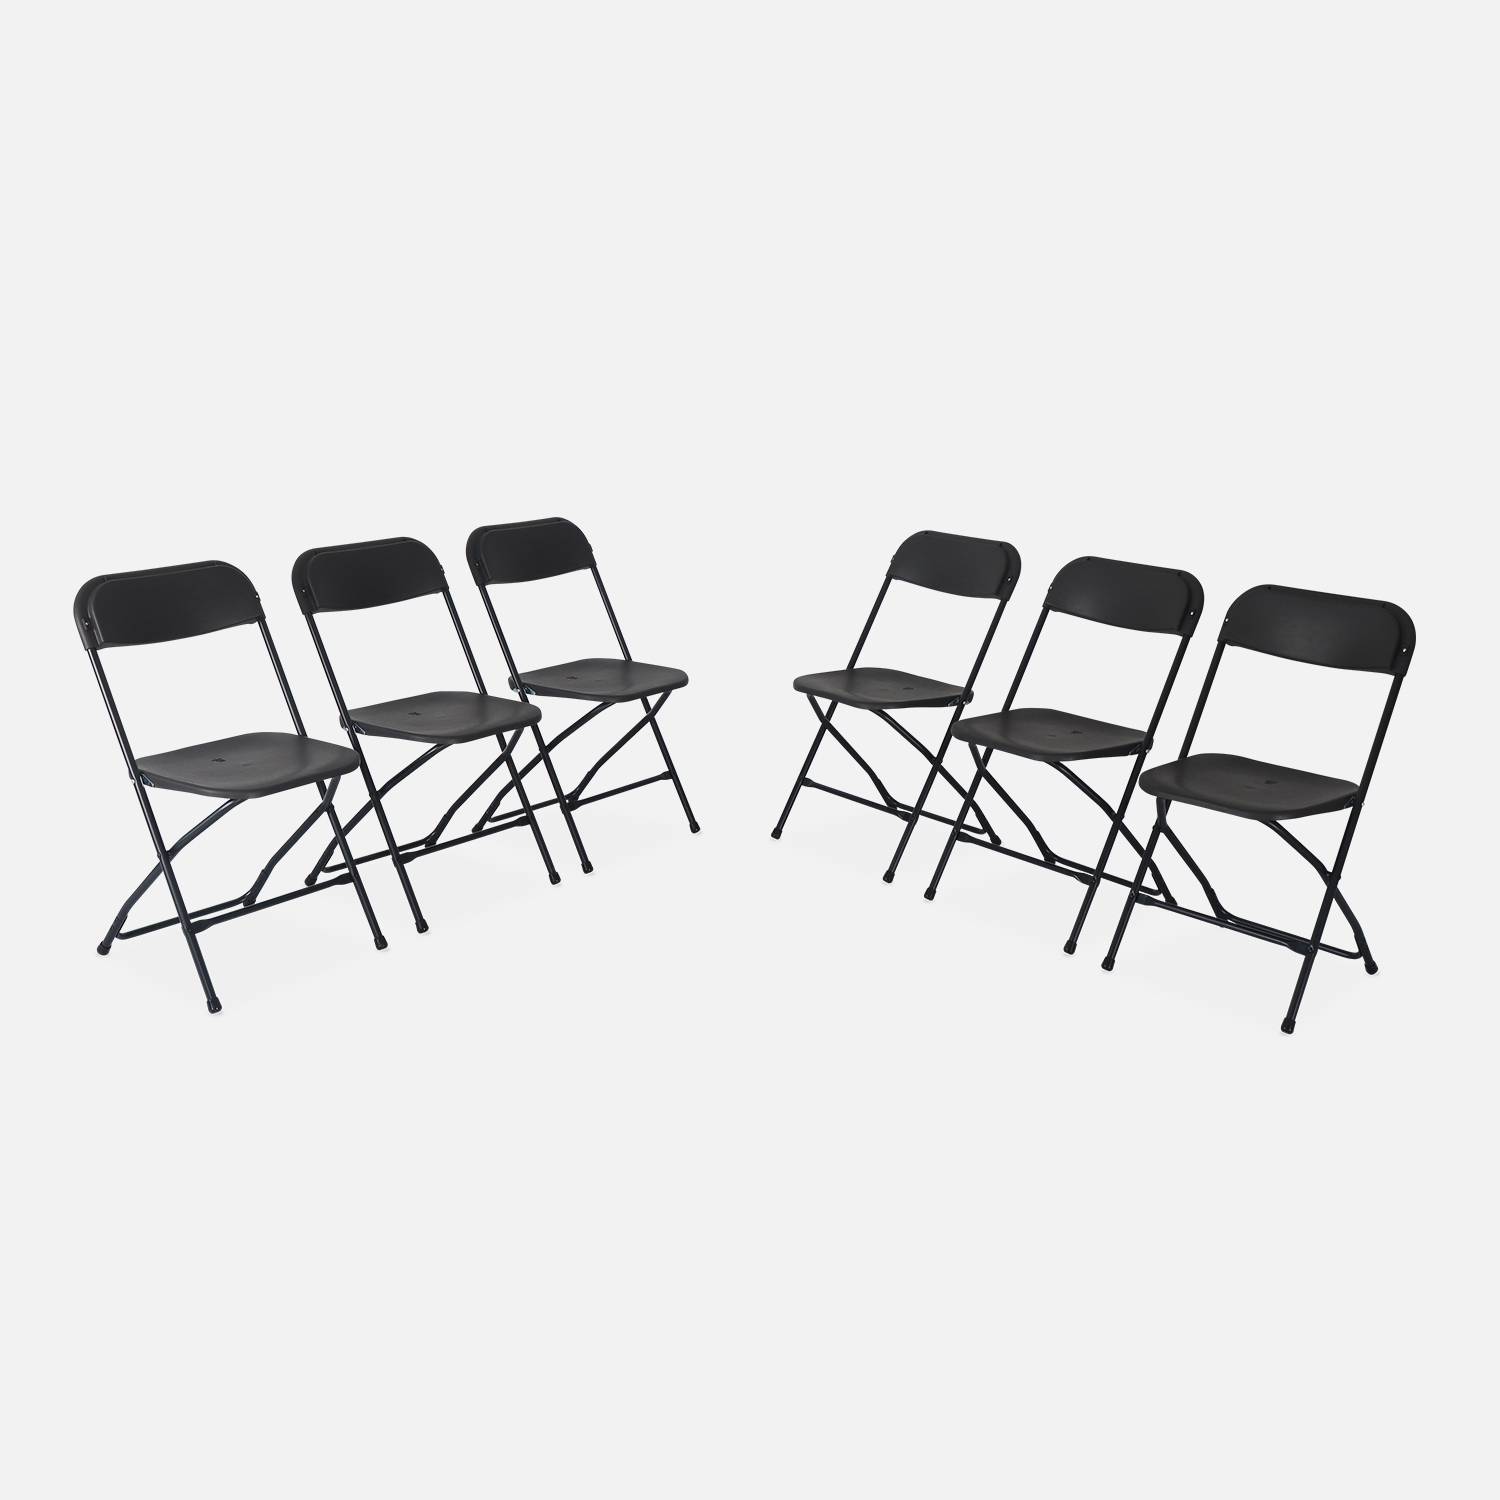  Chaises pliantes - Fiesta - 6 chaises latérales en plastique et métal gris foncé Photo3